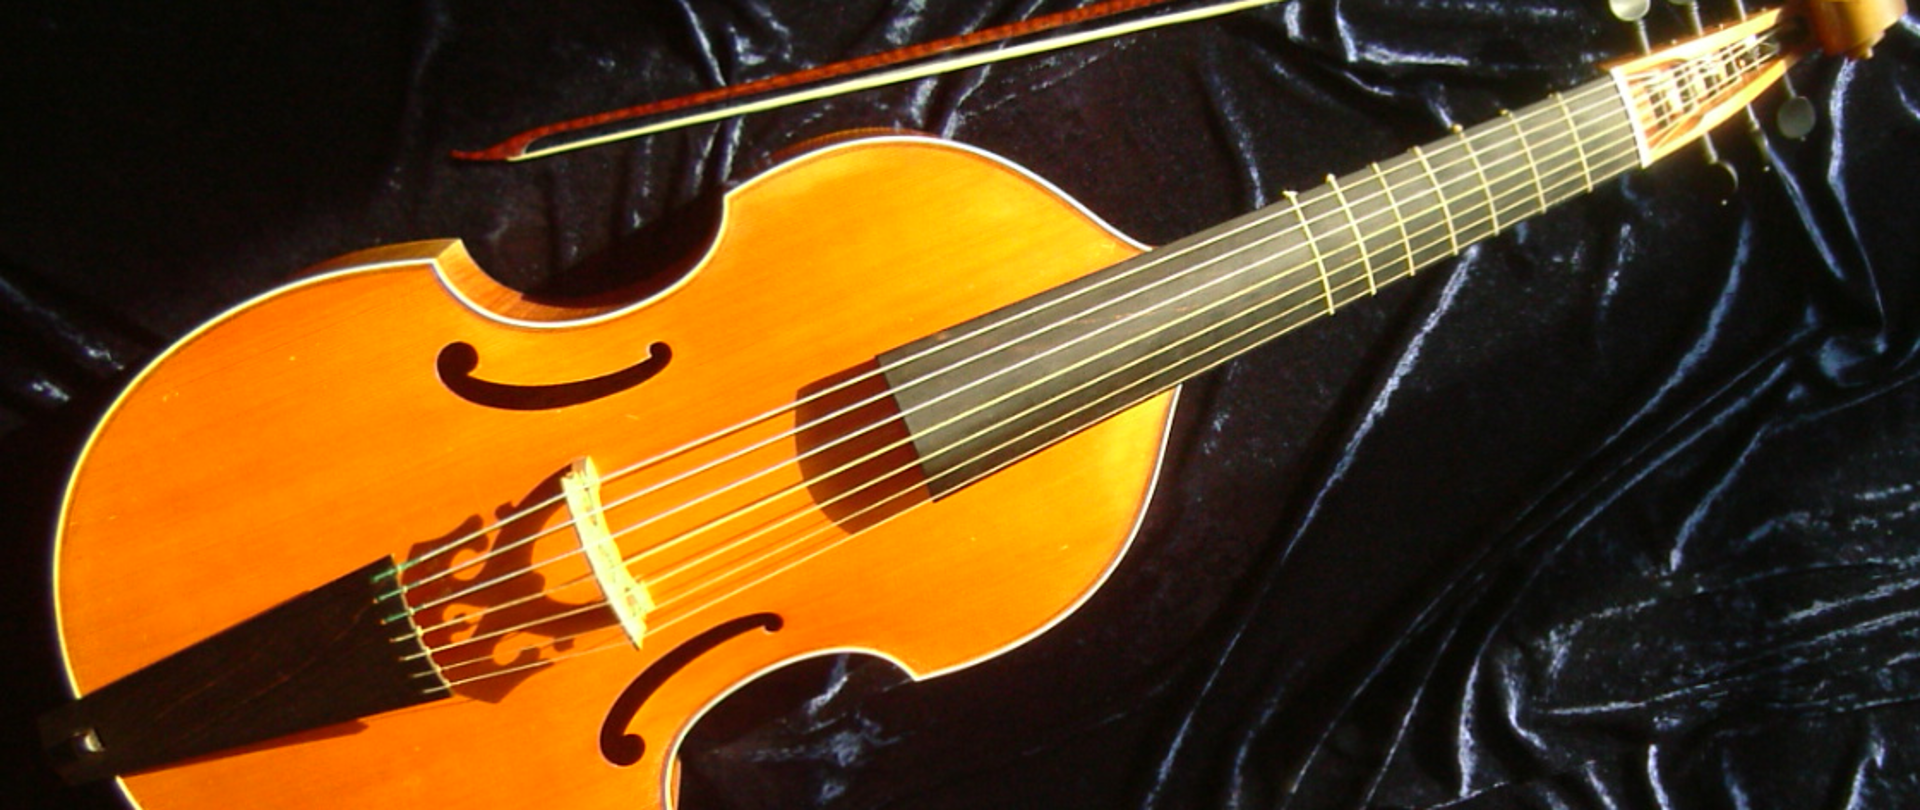 Zdjęcie przedstawia instrument Viola da gamba na czarnym tle. Obok instrumentu leży smyczek.